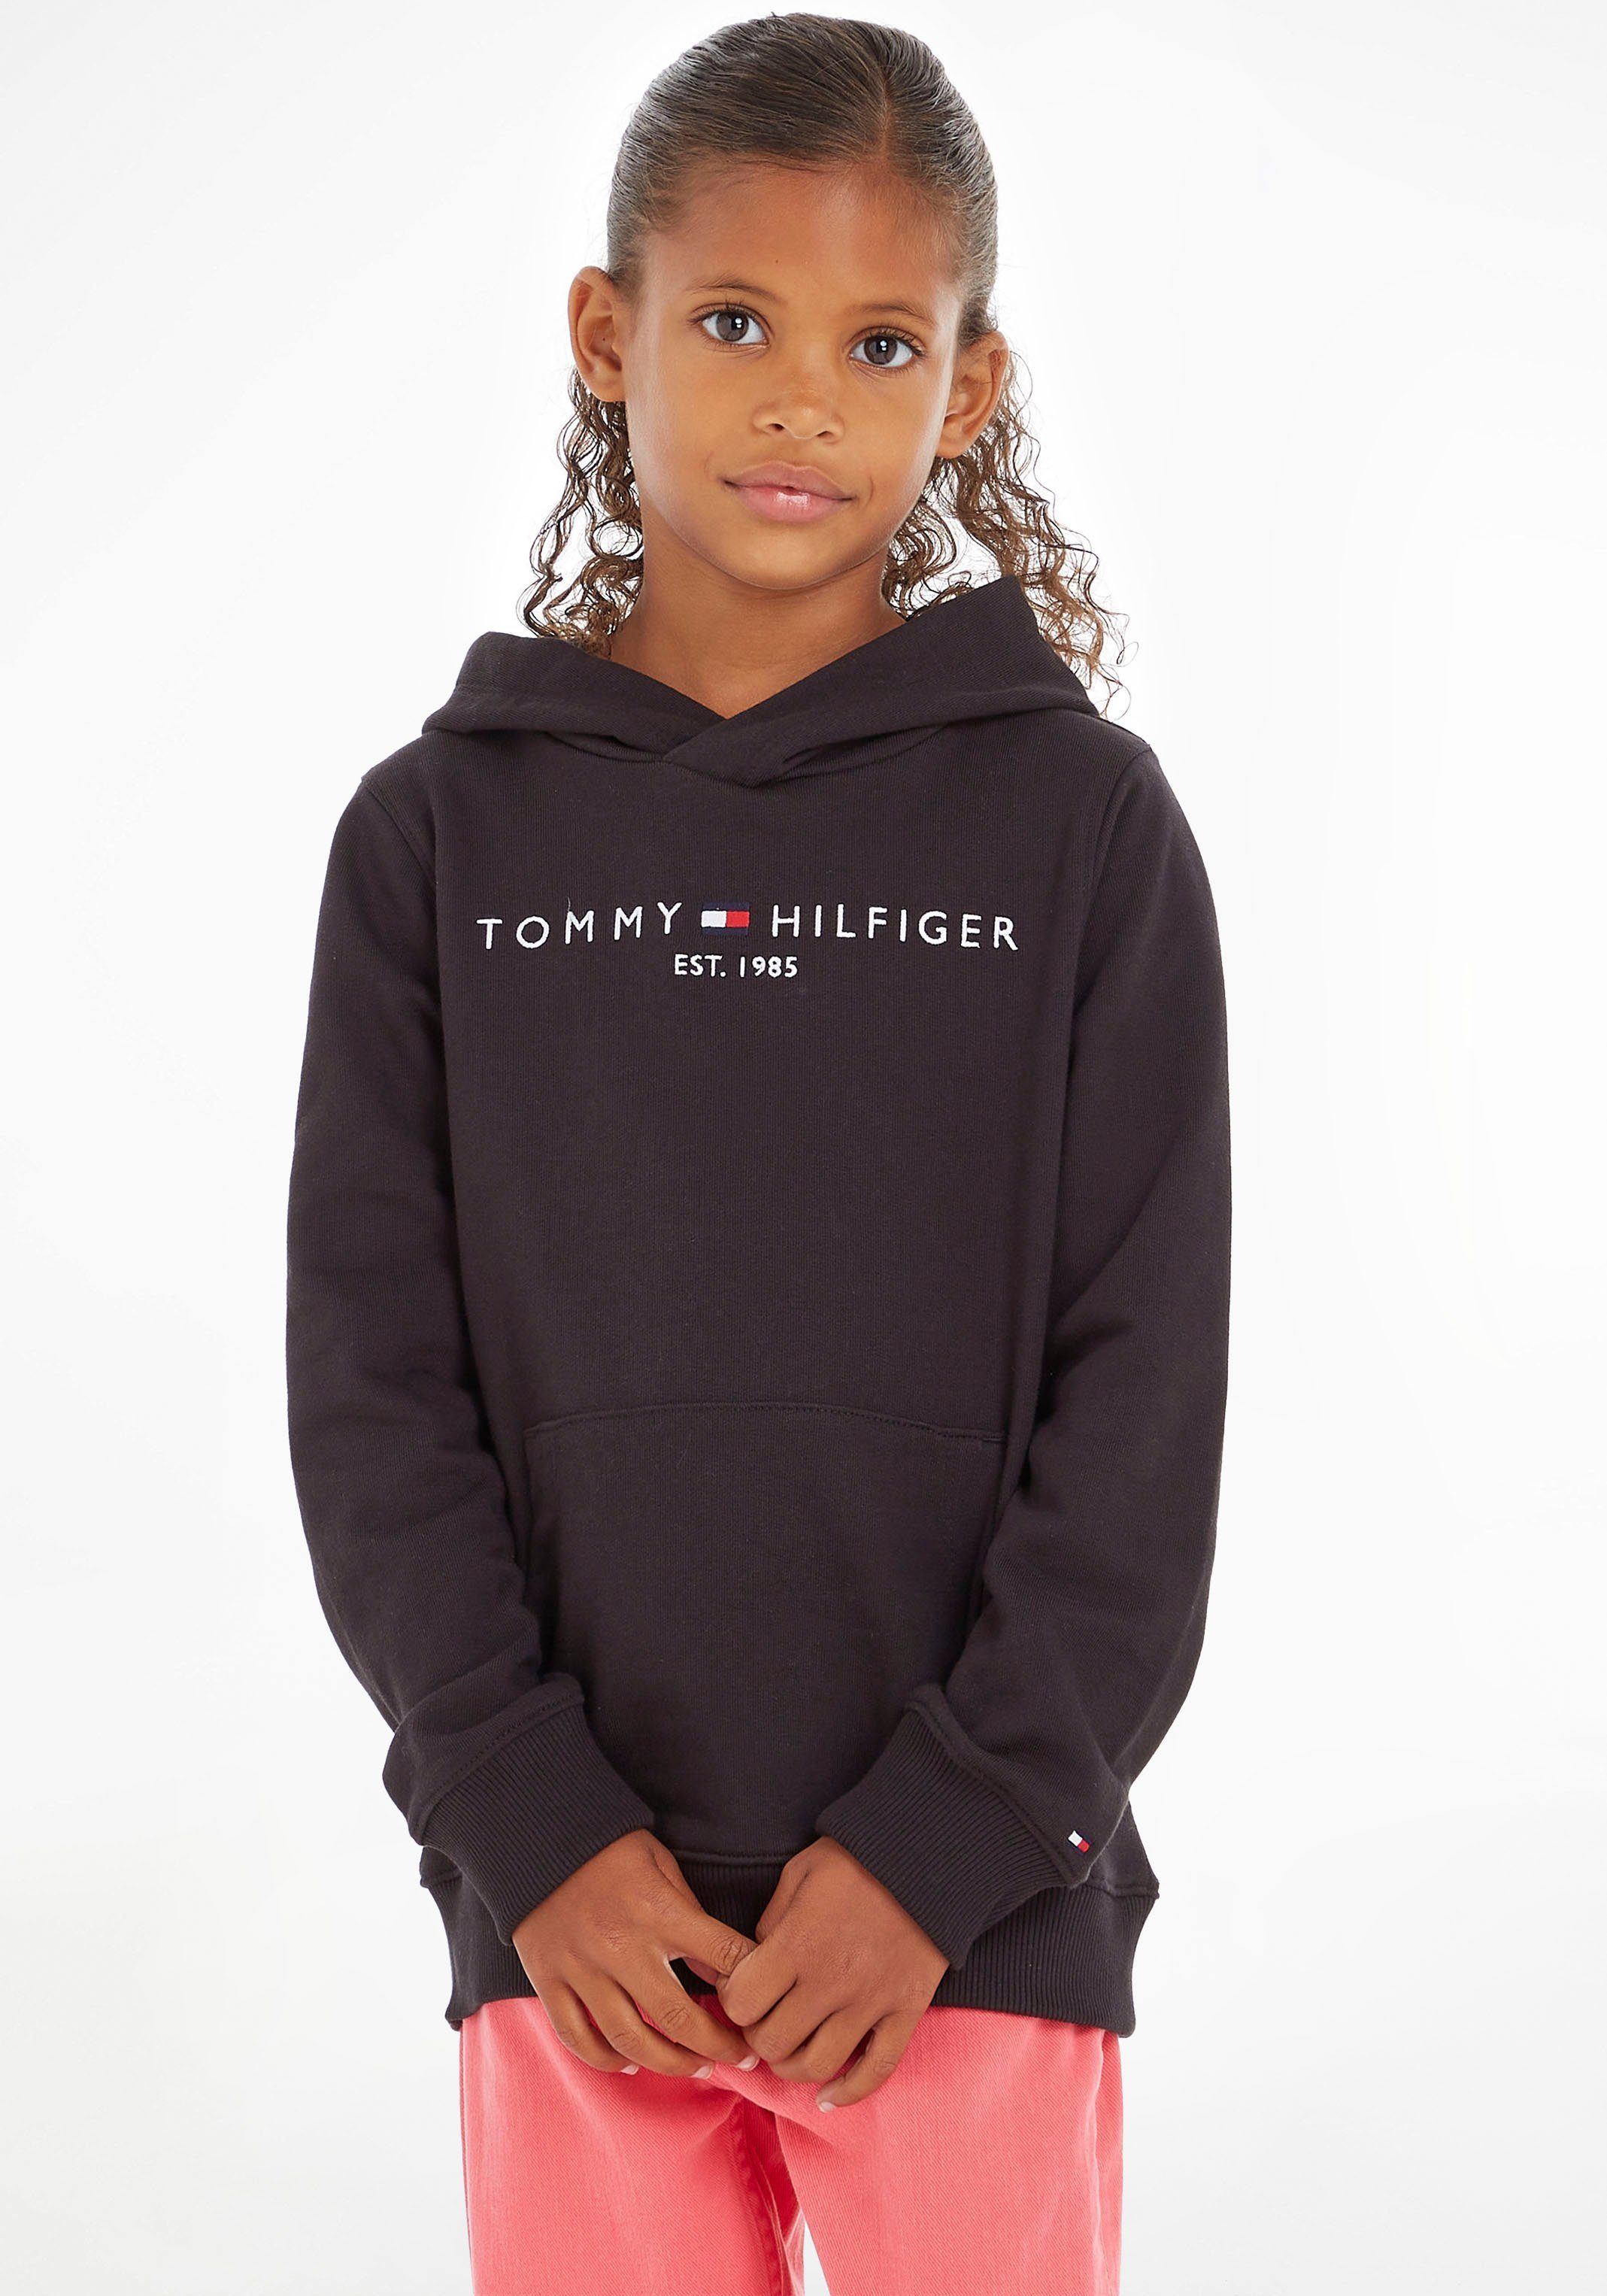 HOODIE ESSENTIAL Kids Mädchen Hilfiger Junior Kinder Tommy Jungen MiniMe,für Kapuzensweatshirt und